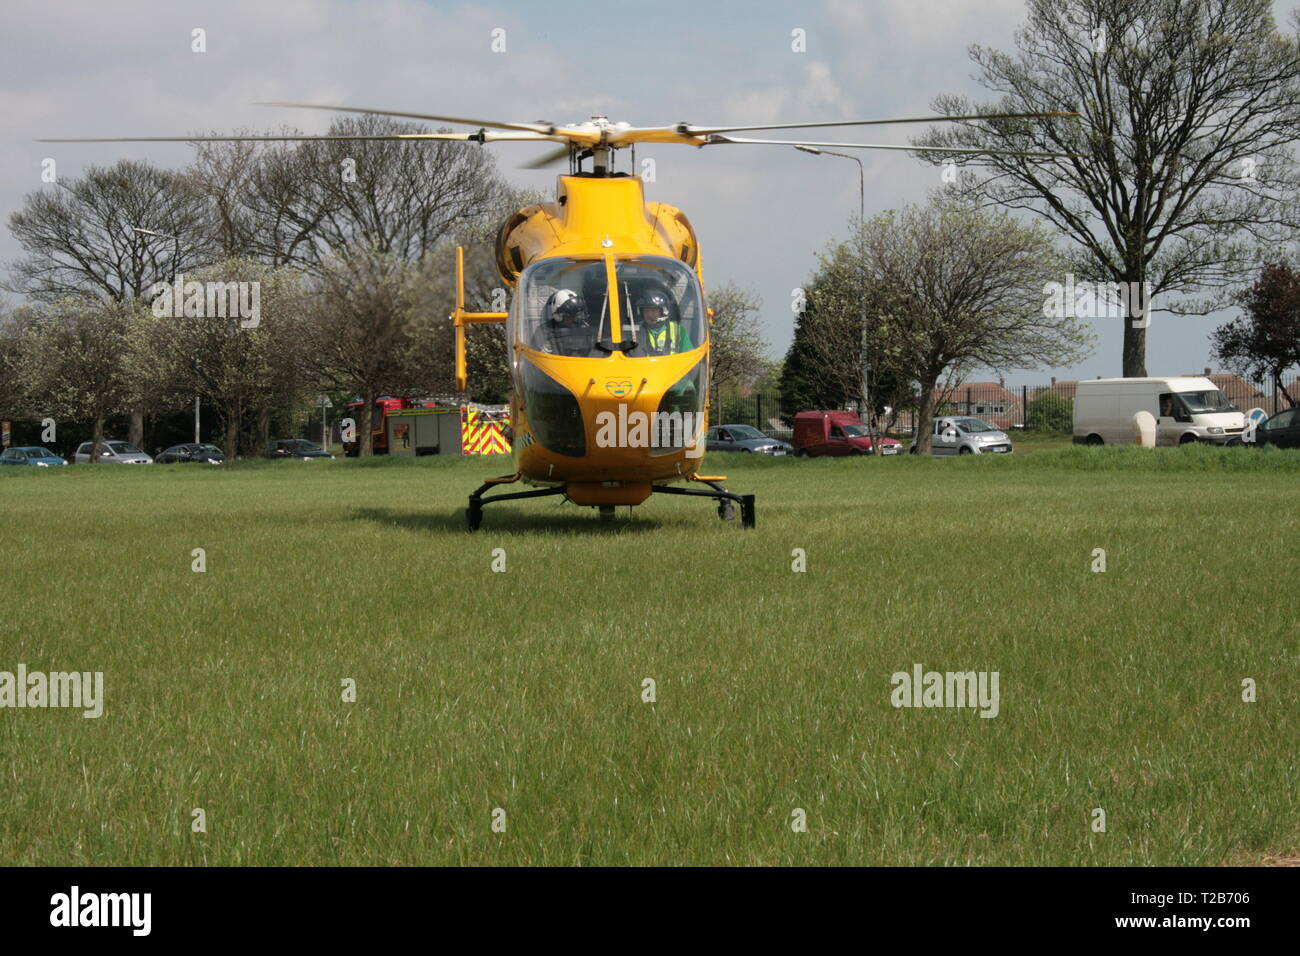 Air ambulance, fast medical response Stock Photo